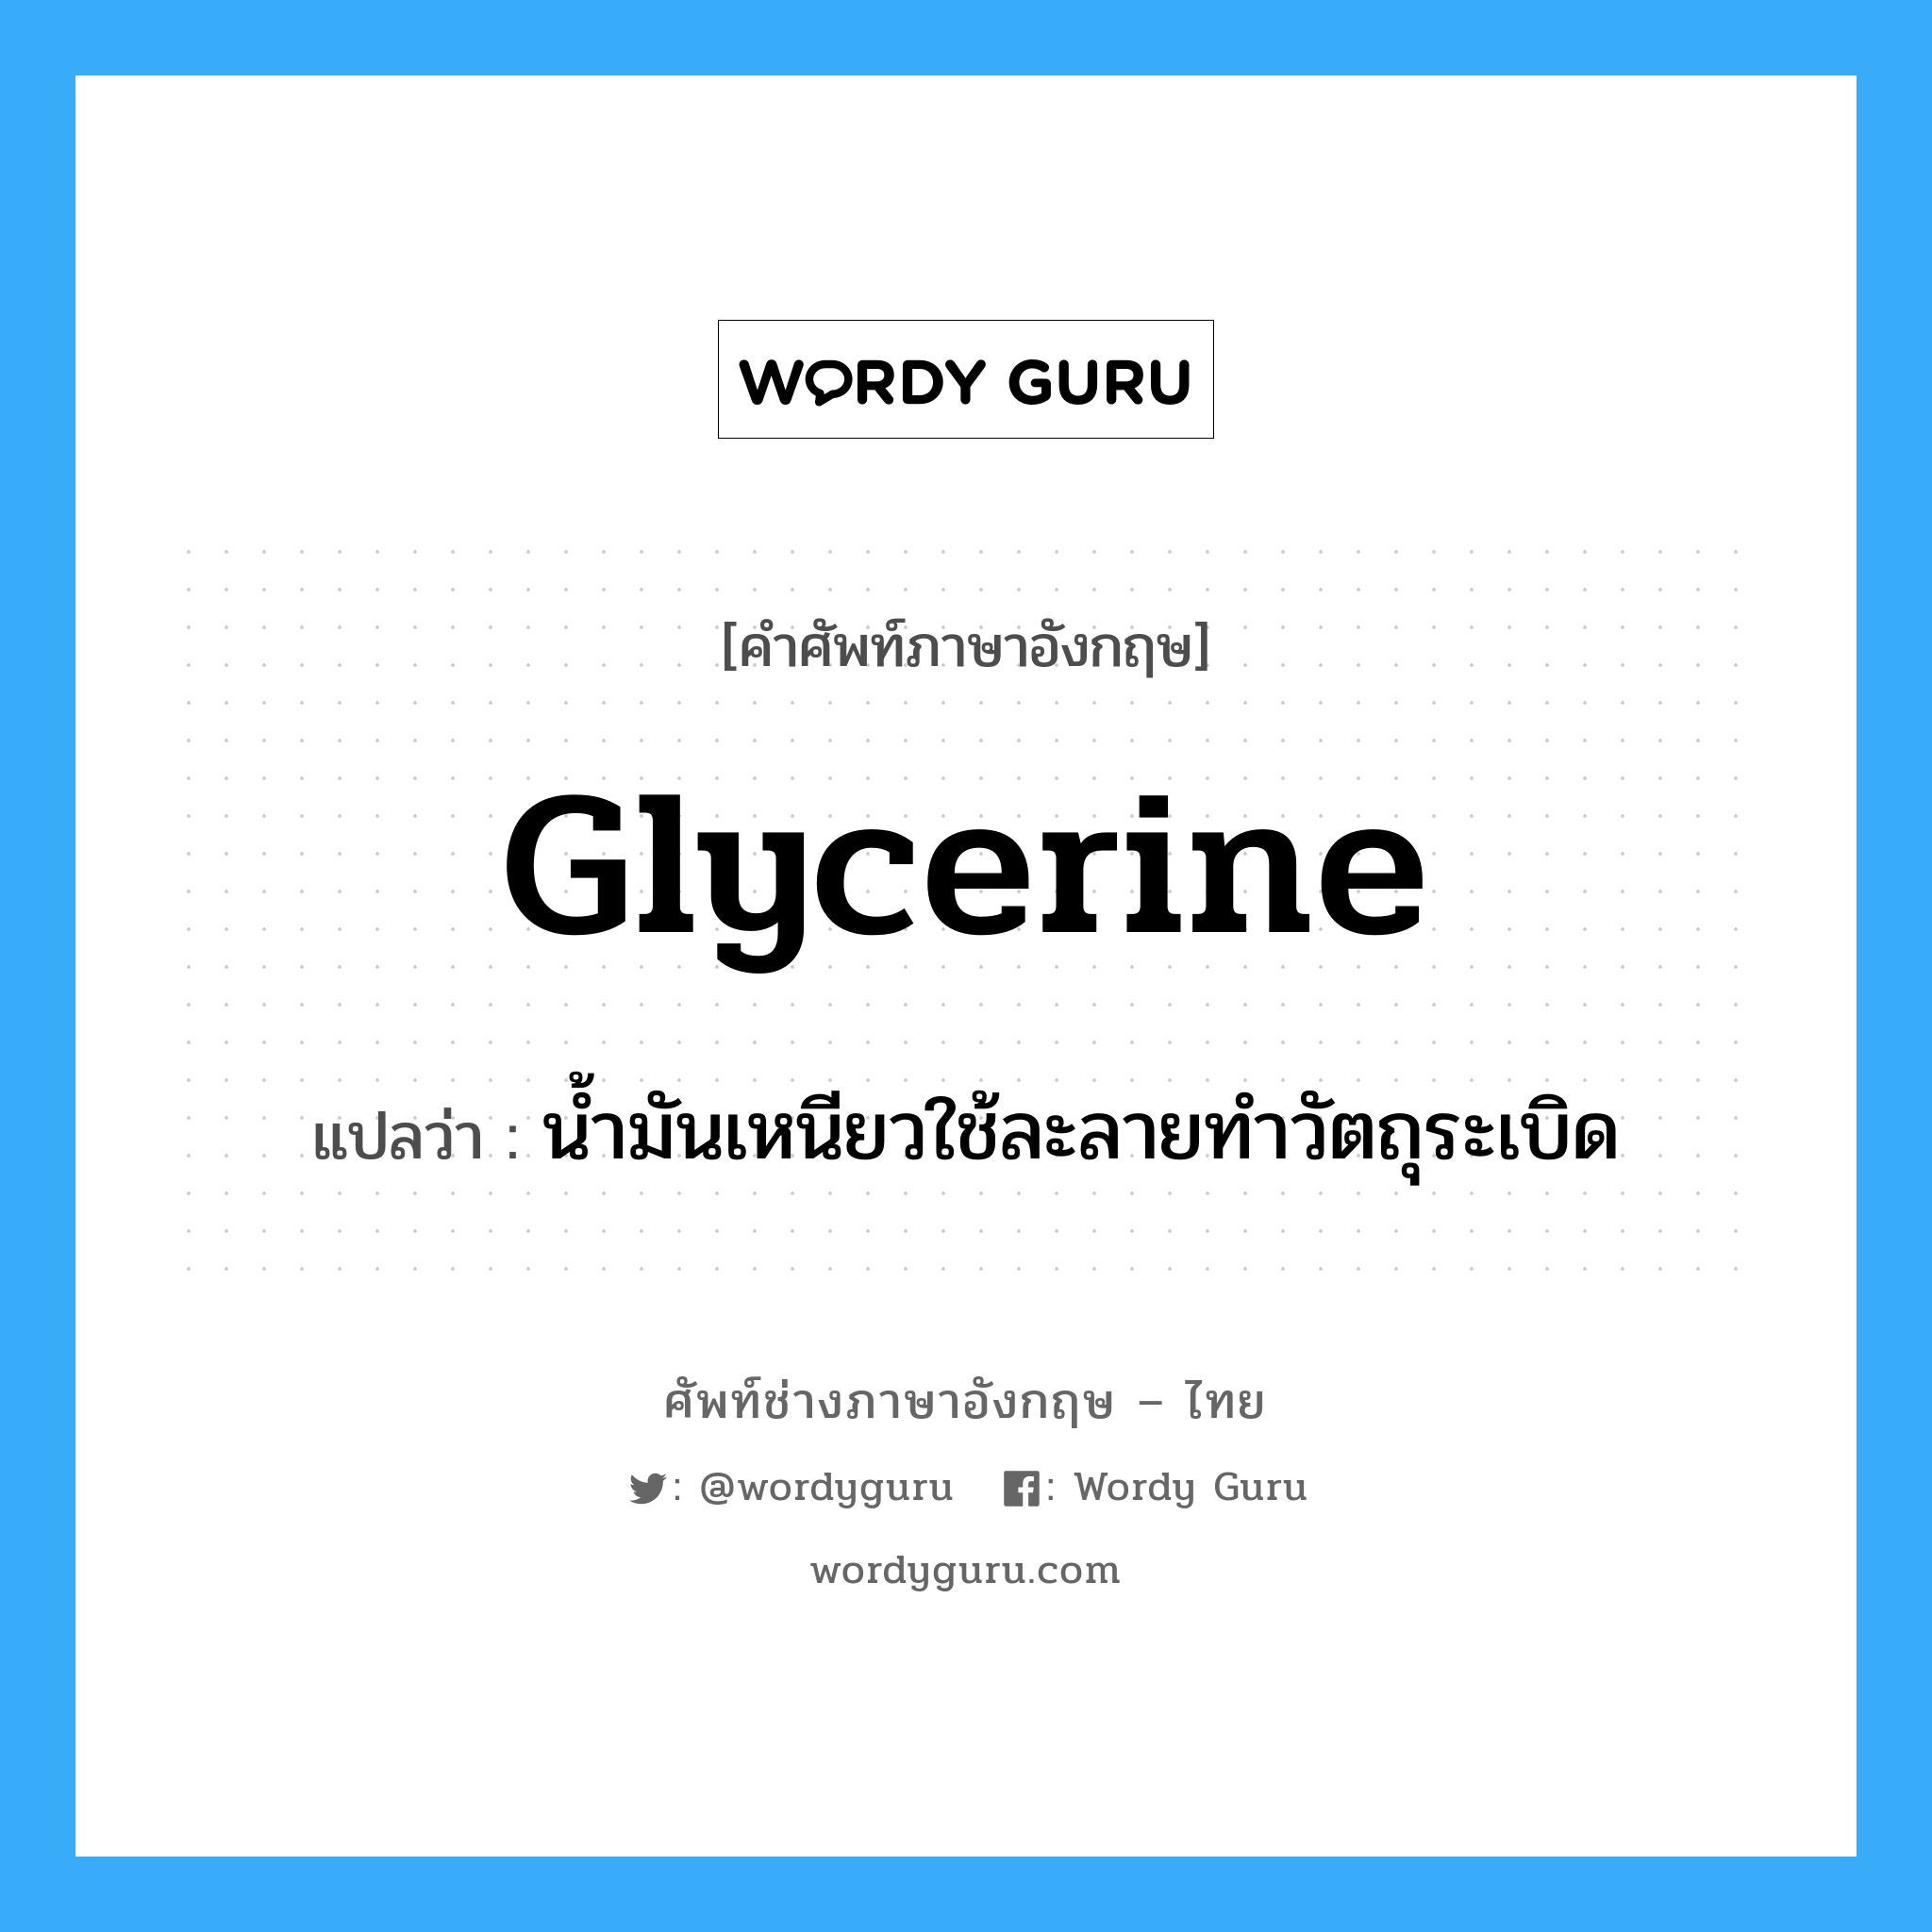 glycerine แปลว่า?, คำศัพท์ช่างภาษาอังกฤษ - ไทย glycerine คำศัพท์ภาษาอังกฤษ glycerine แปลว่า น้ำมันเหนียวใช้ละลายทำวัตถุระเบิด